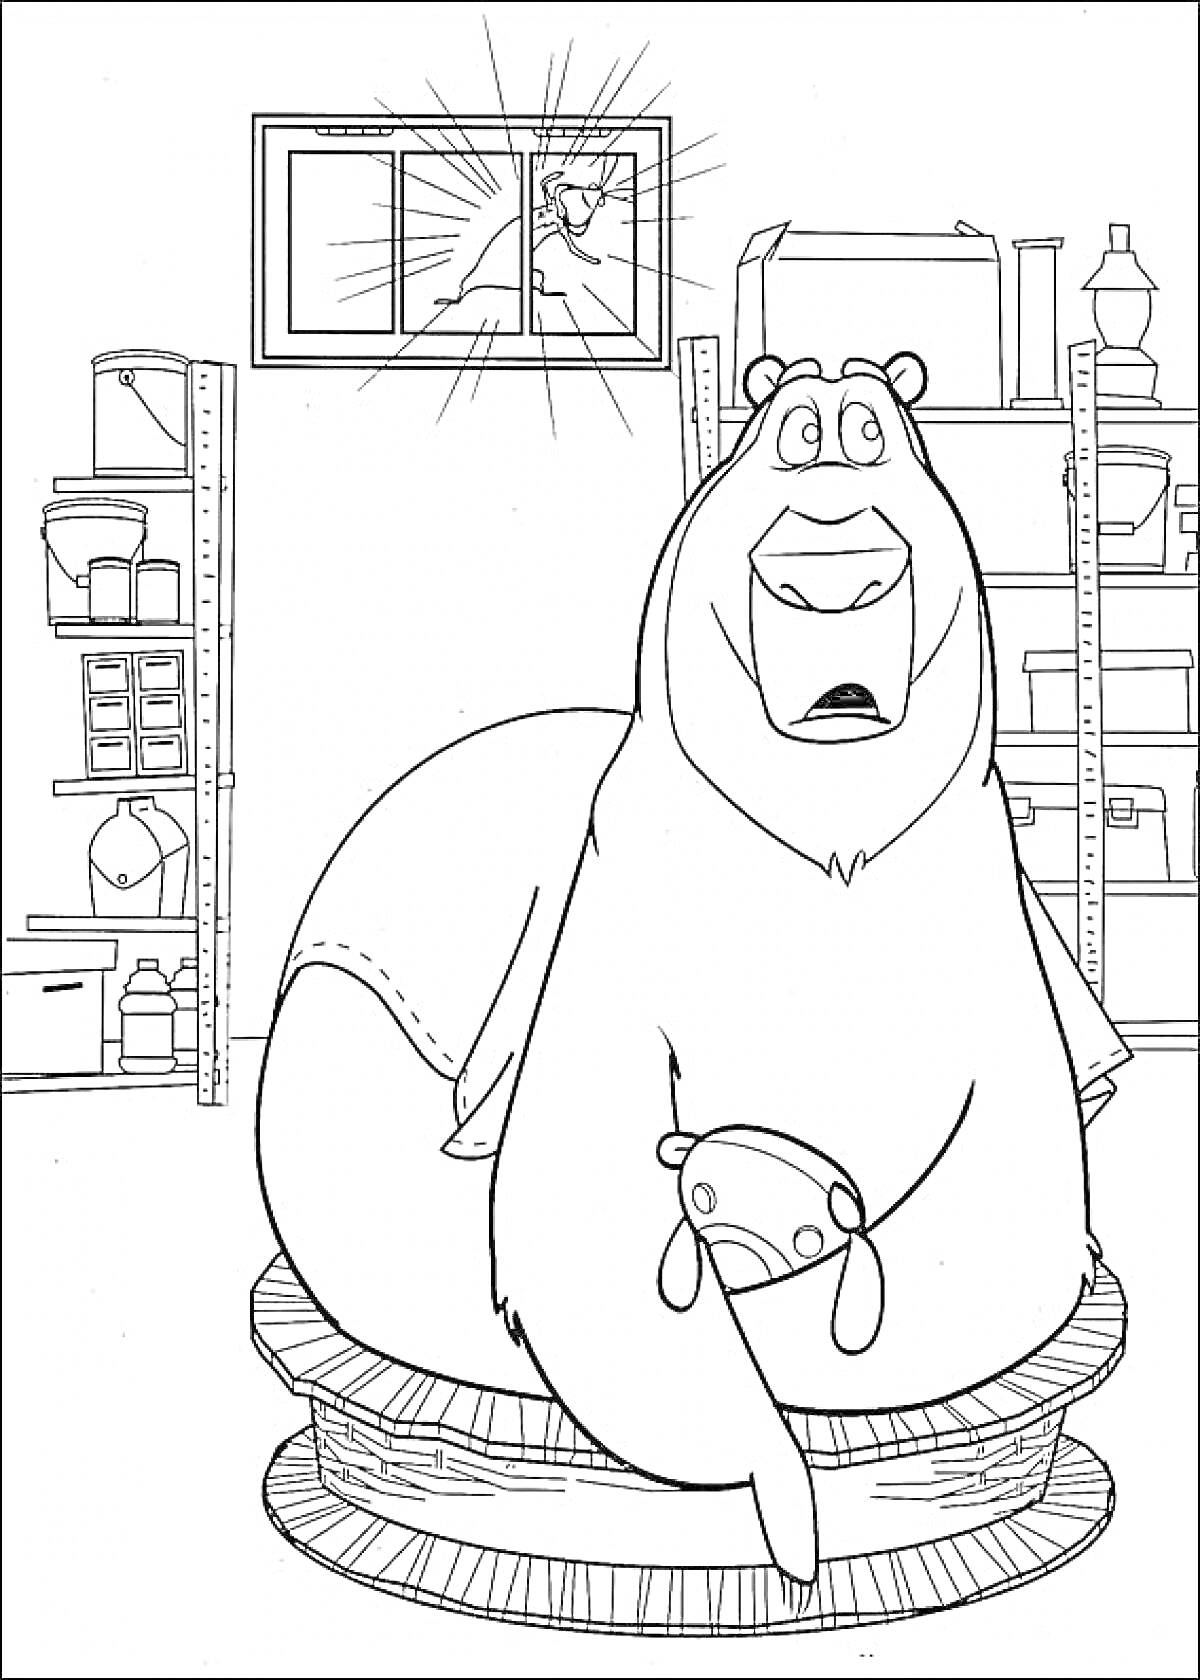 Раскраска Медведь с игрушкой сидит в гараже, окно разбито.